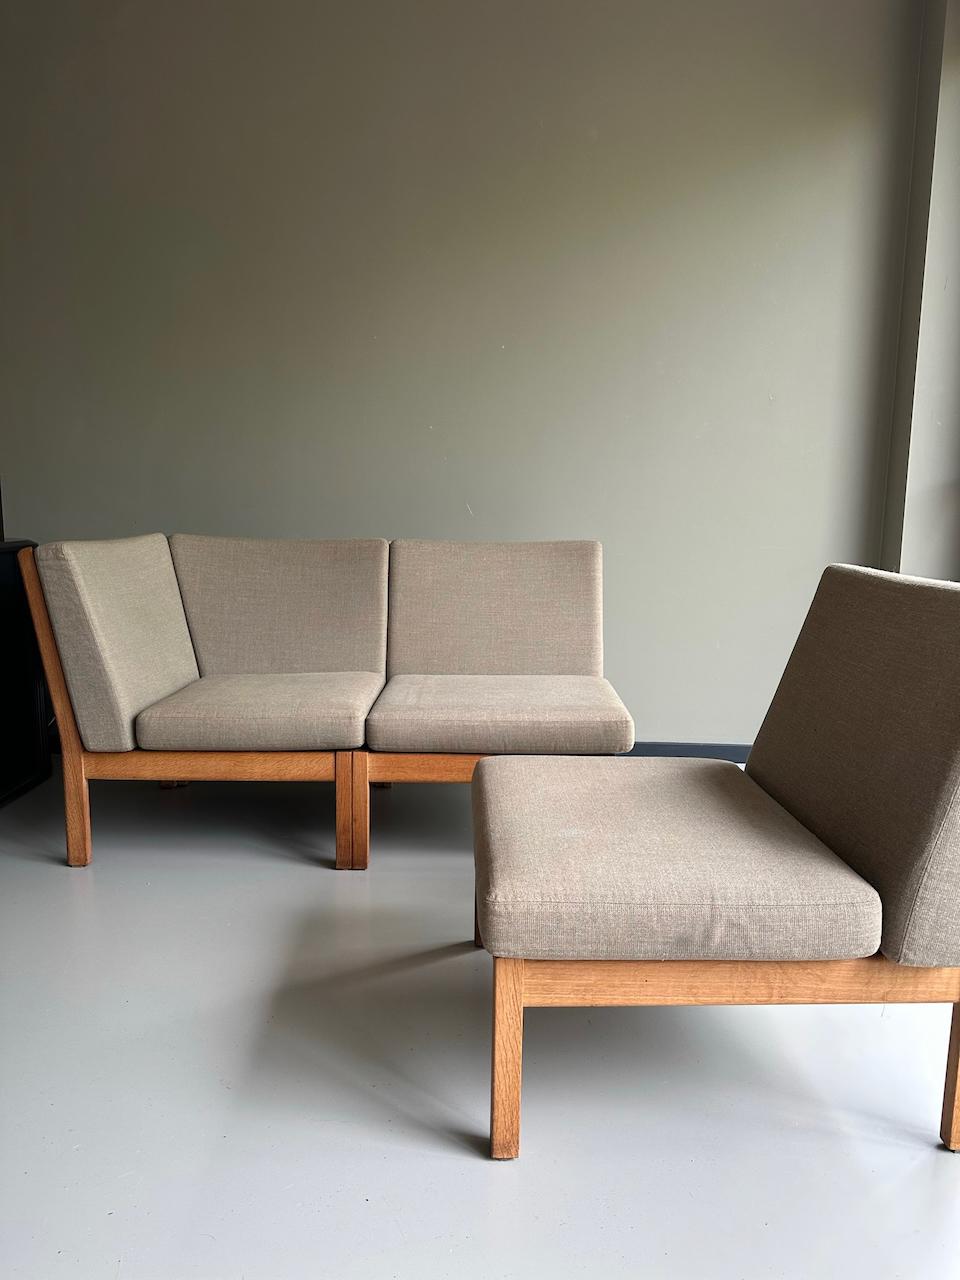 Dreiteiliges modulares Sofa, Modell GE 280 von Design-Großmeister Hans J. Wegner für GETAMA.
Schönes minimalistisches Design aus Dänemark.
Sehr bequemes Sofa, das nach Belieben zusammengestellt werden kann.
Die Elemente verbinden sich mit den